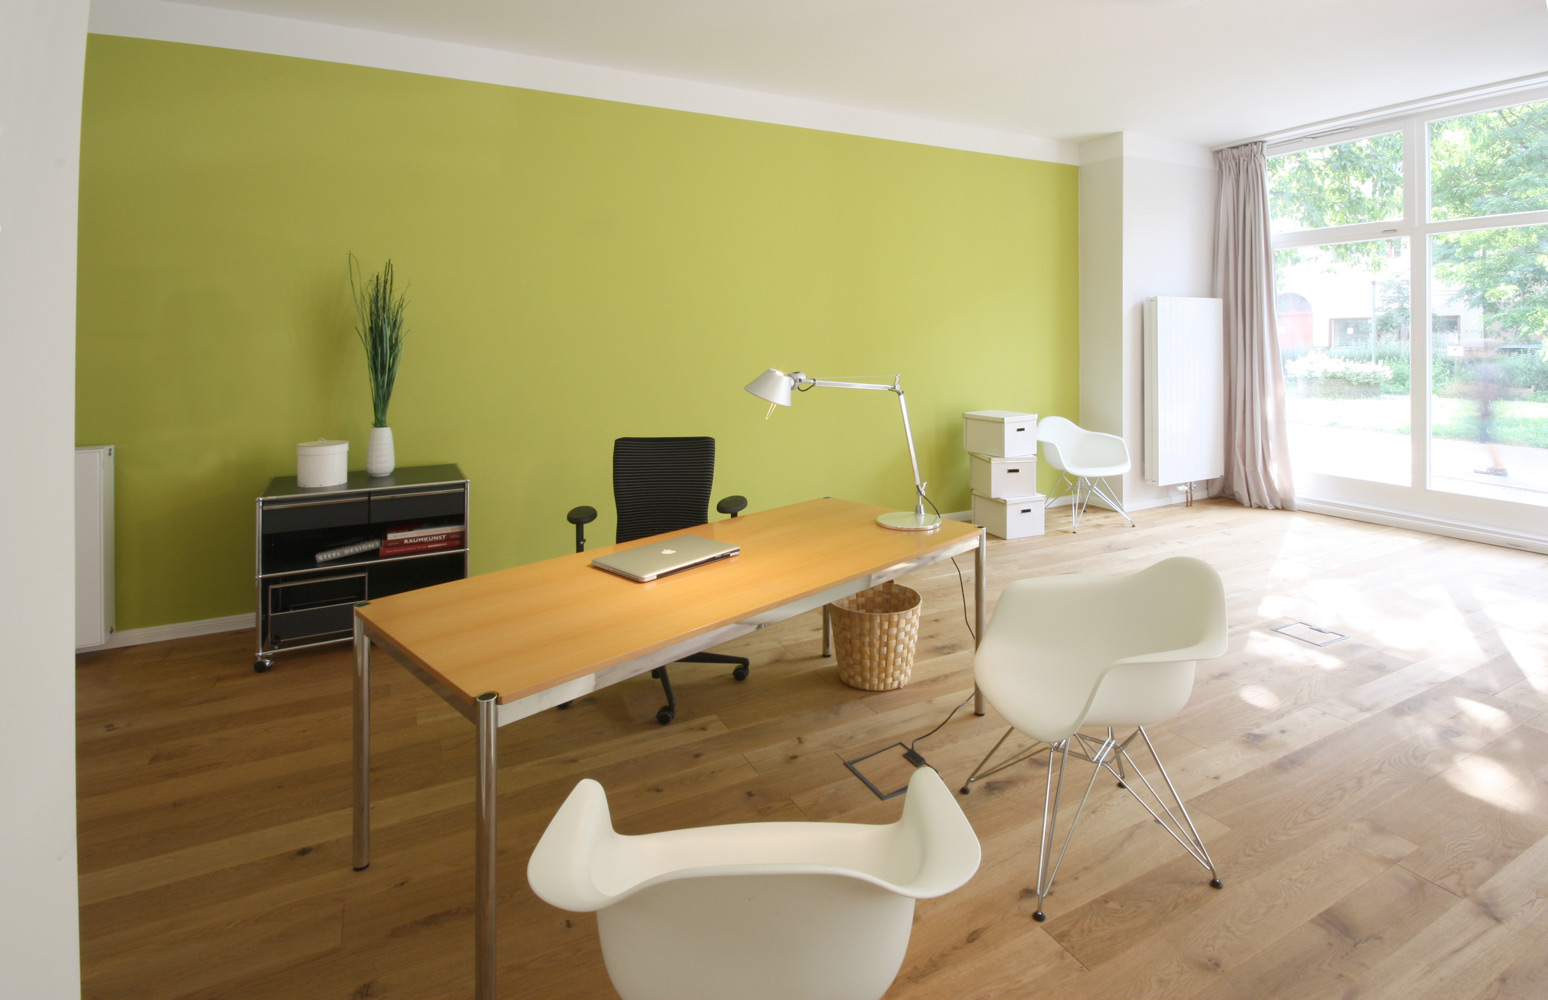 Beratungssituation in einem großen, hellen Raum. Schreibtisch mit Holzplatte und 2 weißen Schalenstühlen aus Kunststoff. Die hintere Raumwand ist hellgrün.